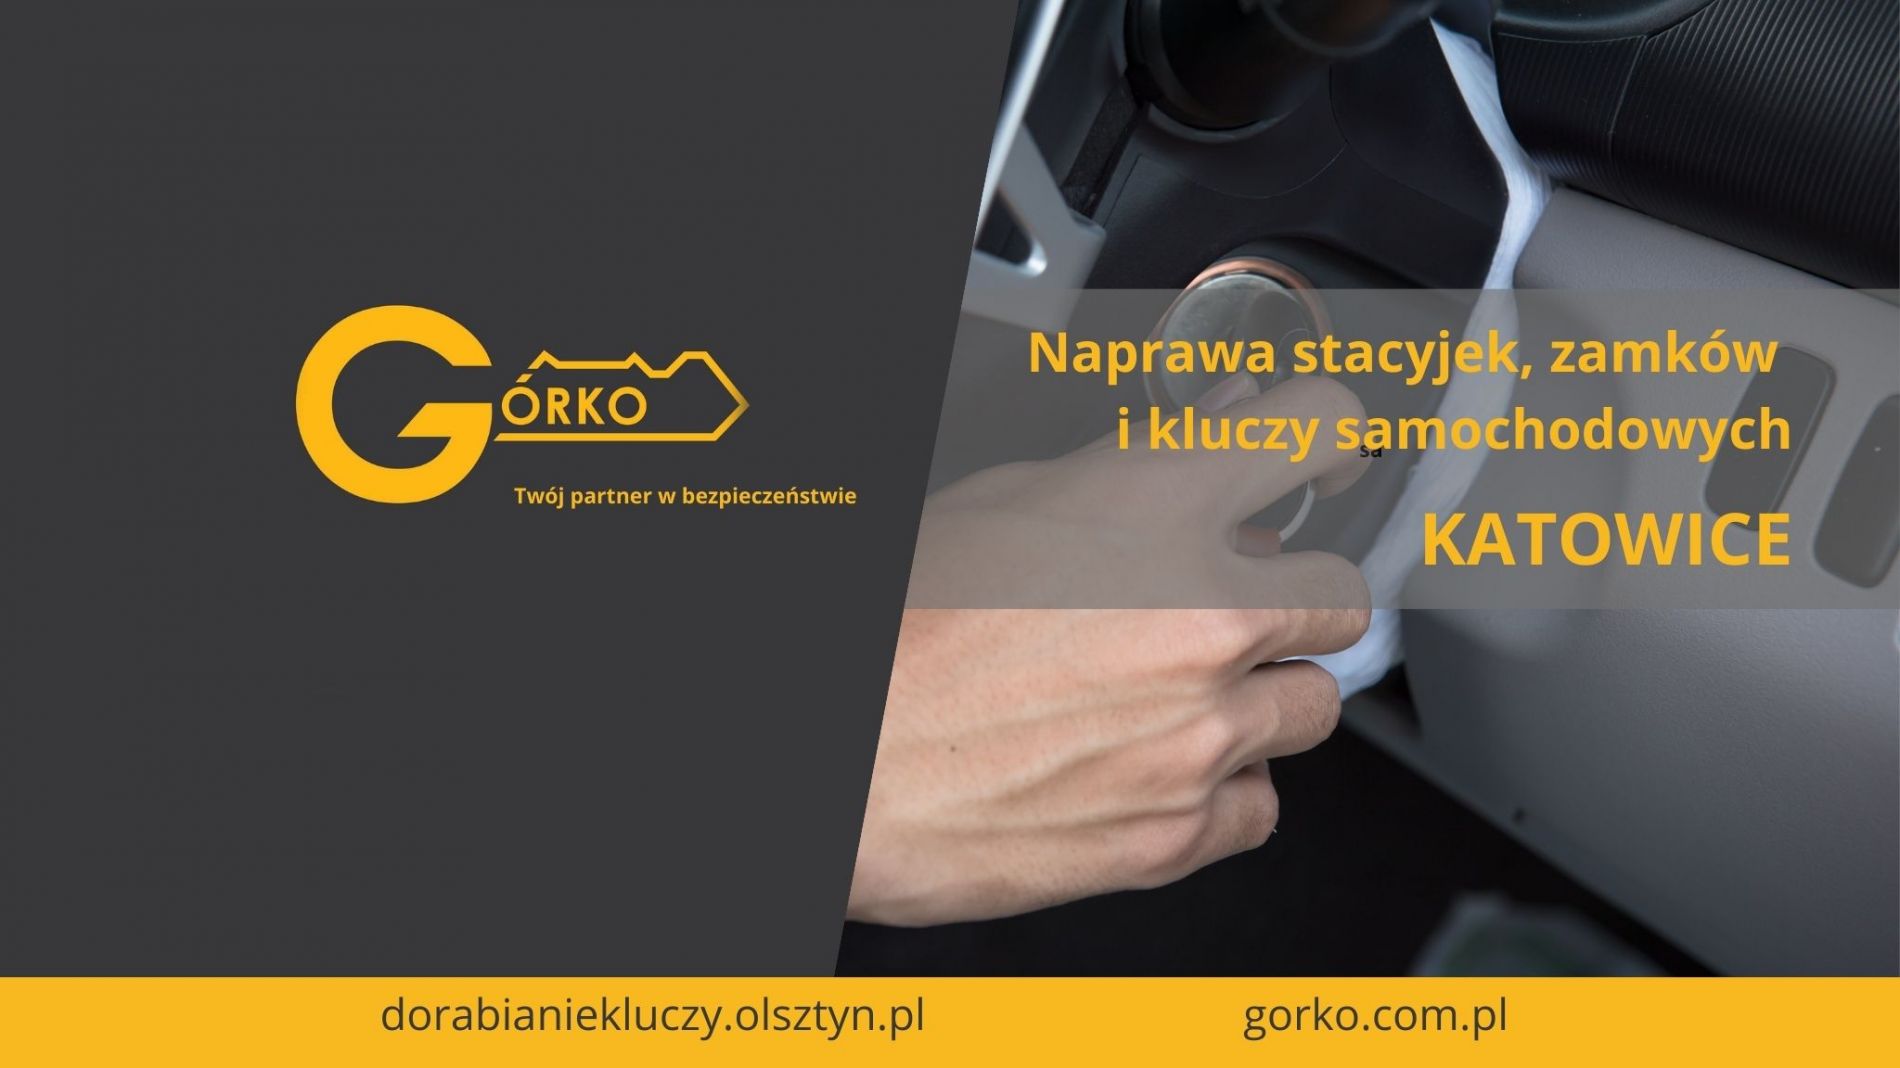 Naprawa stacyjek, zamków i kluczy samochodowych – Katowice (Usługa zdalna)